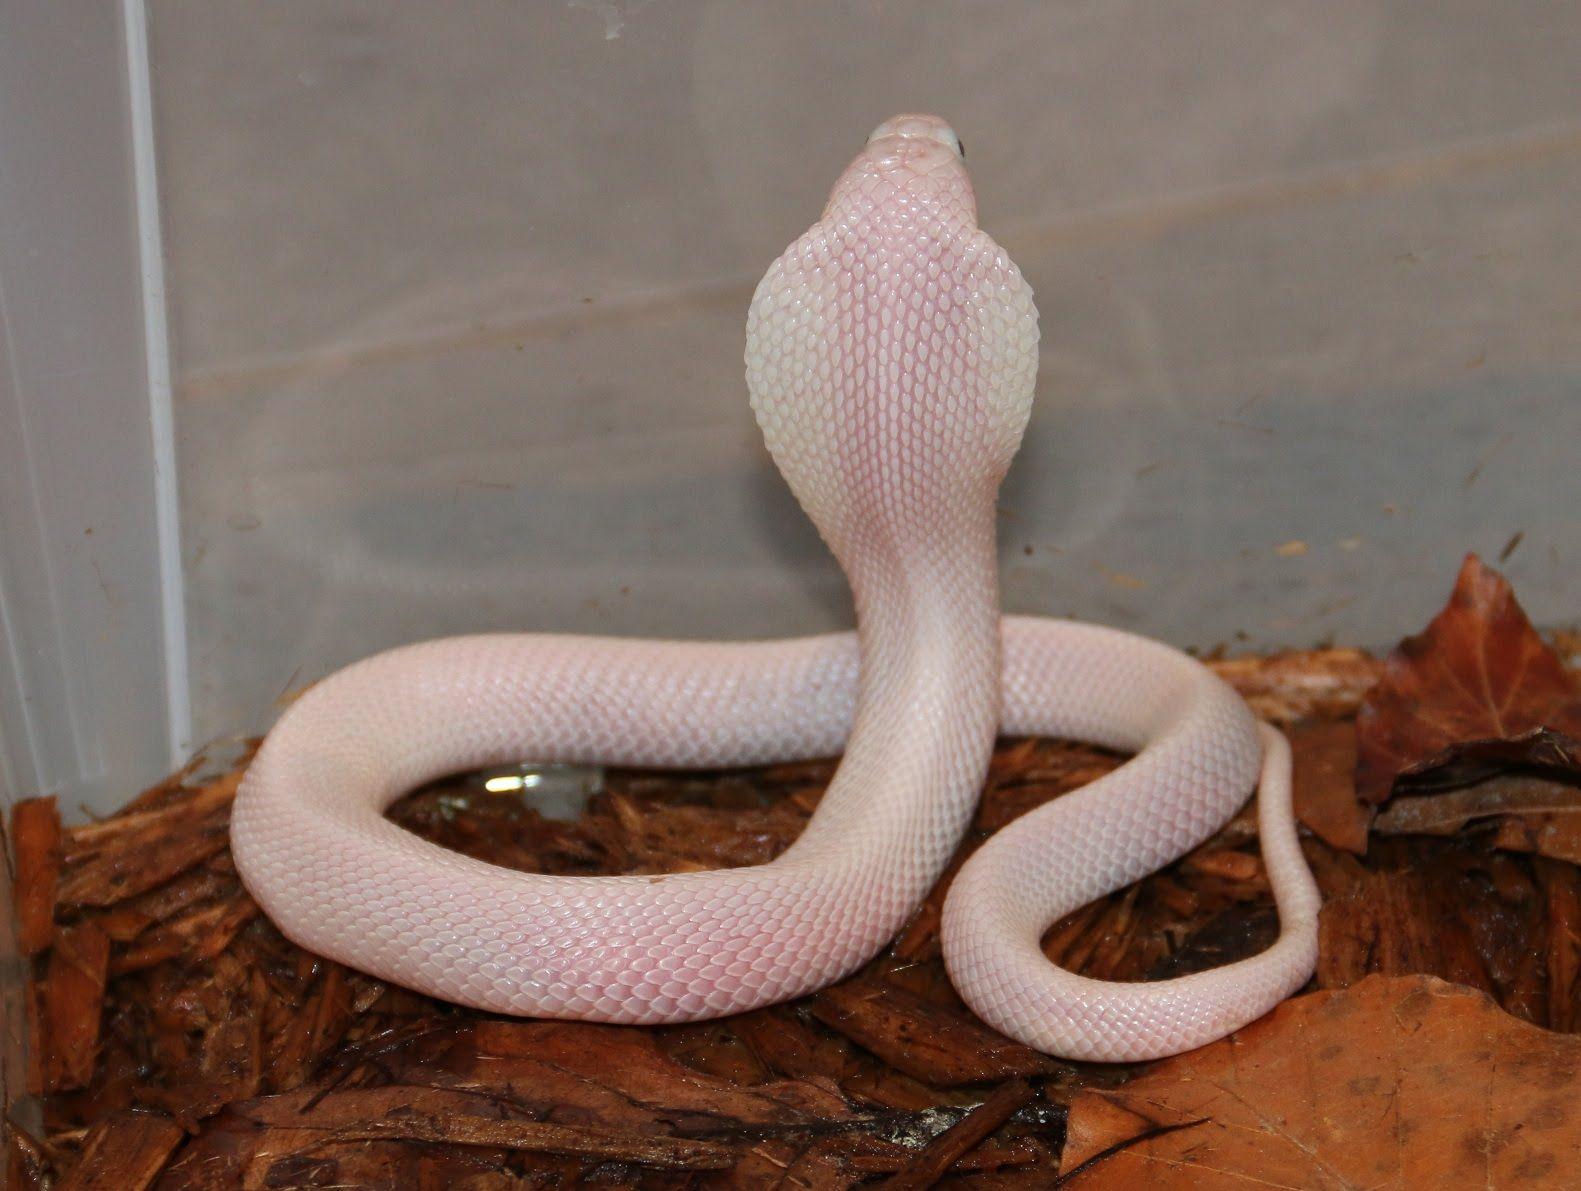 The White (Leucistic) Cobra